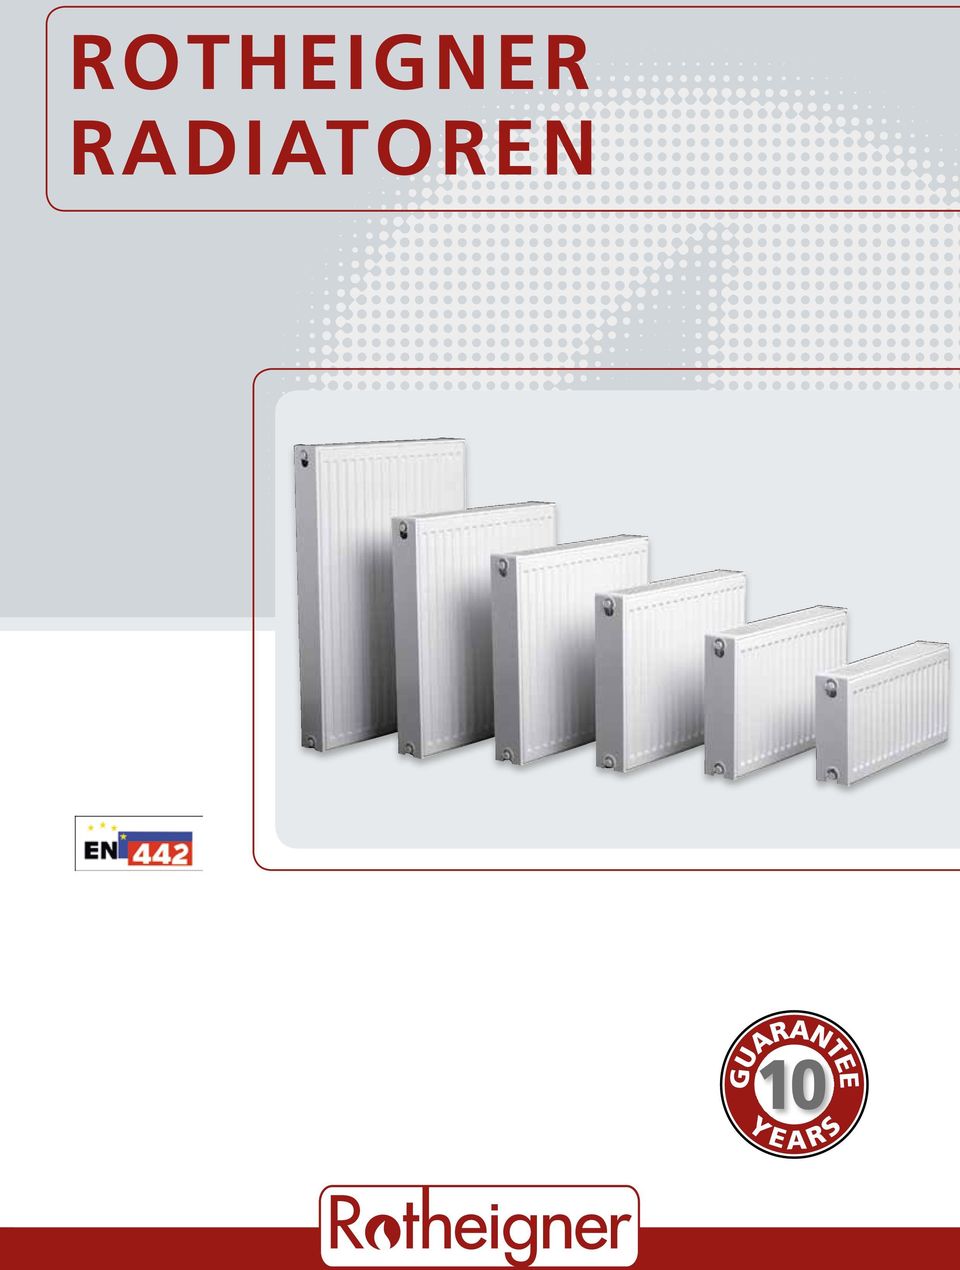 MODERNE ROTHEIGNER ABGASSYSTEME RADIATOREN - PDF Free Download